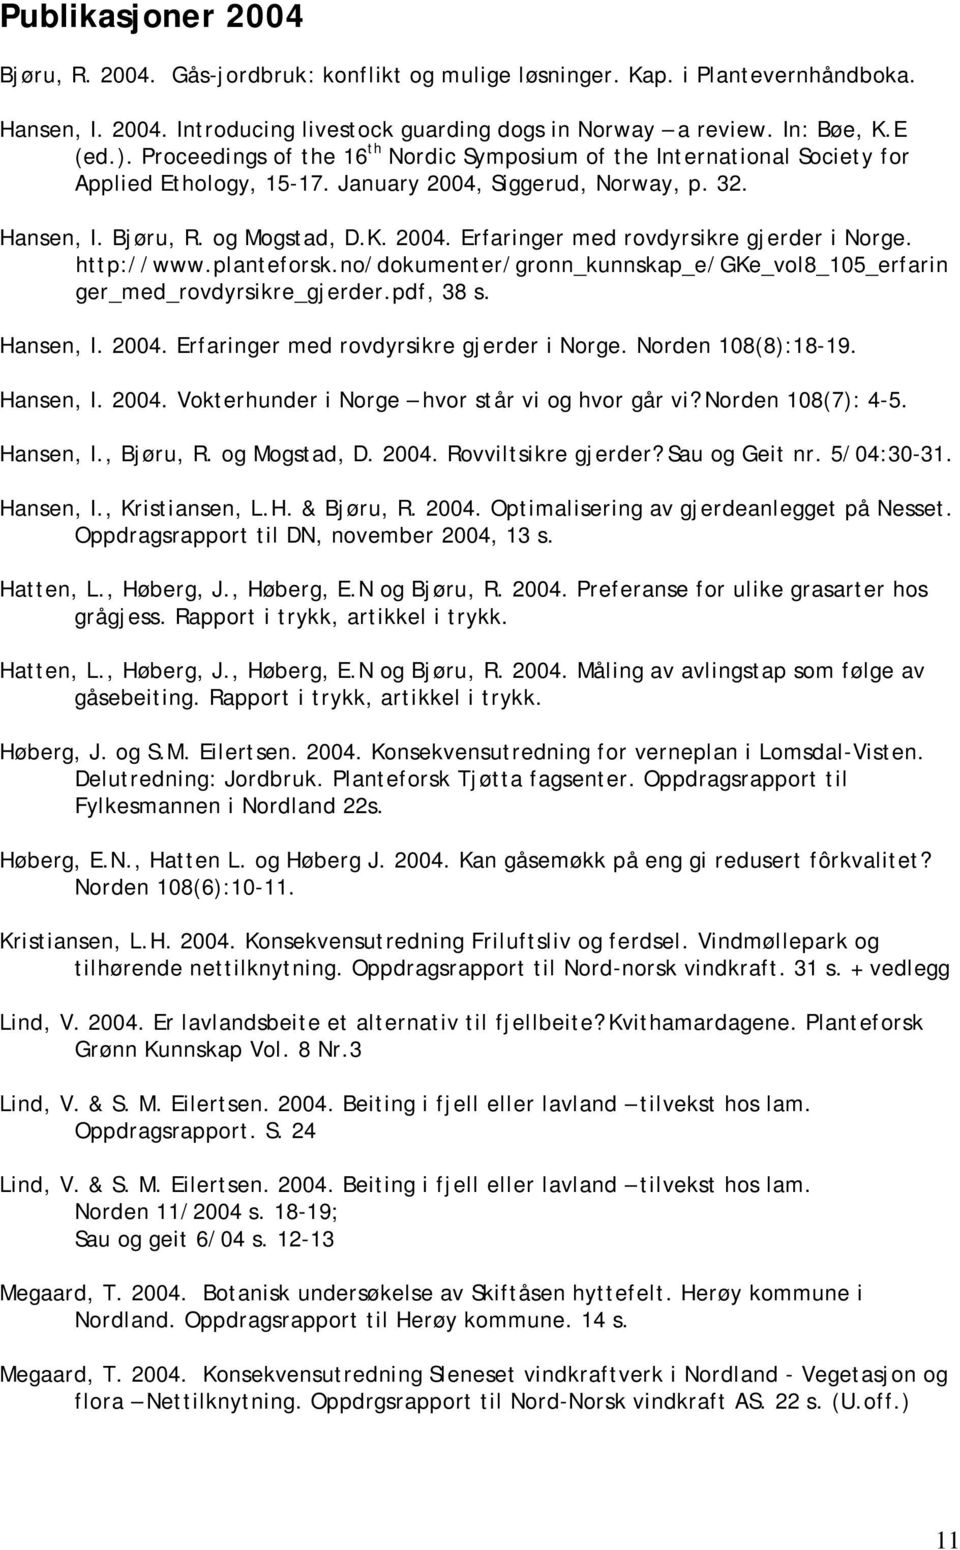 http://www.planteforsk.no/dokumenter/gronn_kunnskap_e/gke_vol8_105_erfarin ger_med_rovdyrsikre_gjerder.pdf, 38 s. Hansen, I. 2004. Erfaringer med rovdyrsikre gjerder i Norge. Norden 108(8):18-19.